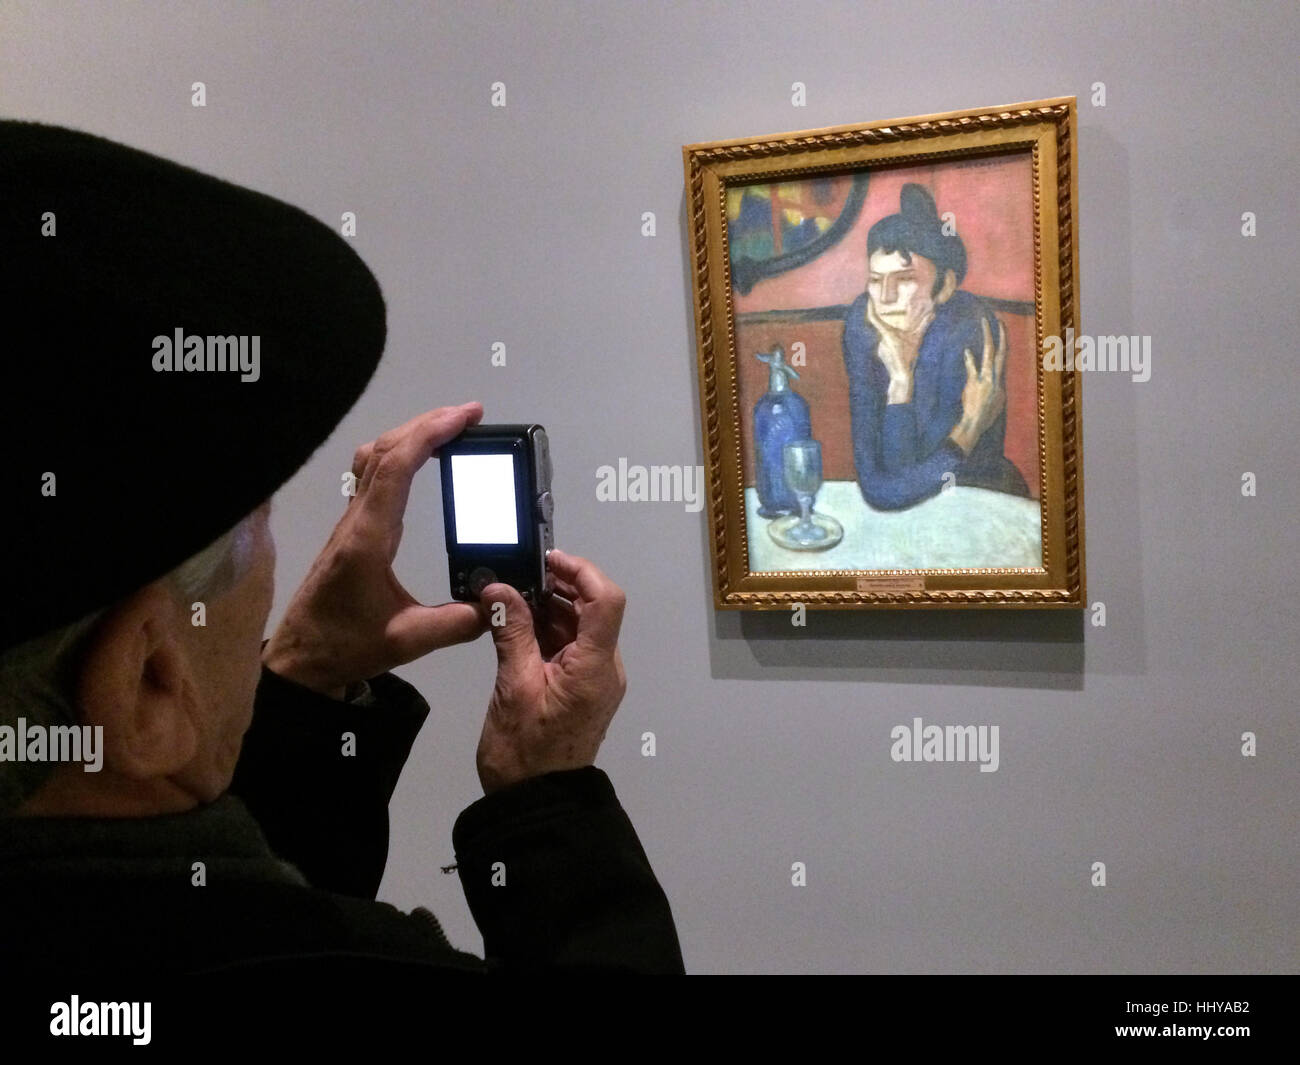 Visiteur utilise une caméra pour photographier le tableau buveur d'Absinthe (1901) de Pablo Picasso présentés à l'exposition d'icônes de l'Art Moderne à partir de la Collection Chtchoukine) par la Fondation Louis Vuitton à Paris, France. L'exposition est présentée jusqu'au 5 mars 2017. Banque D'Images